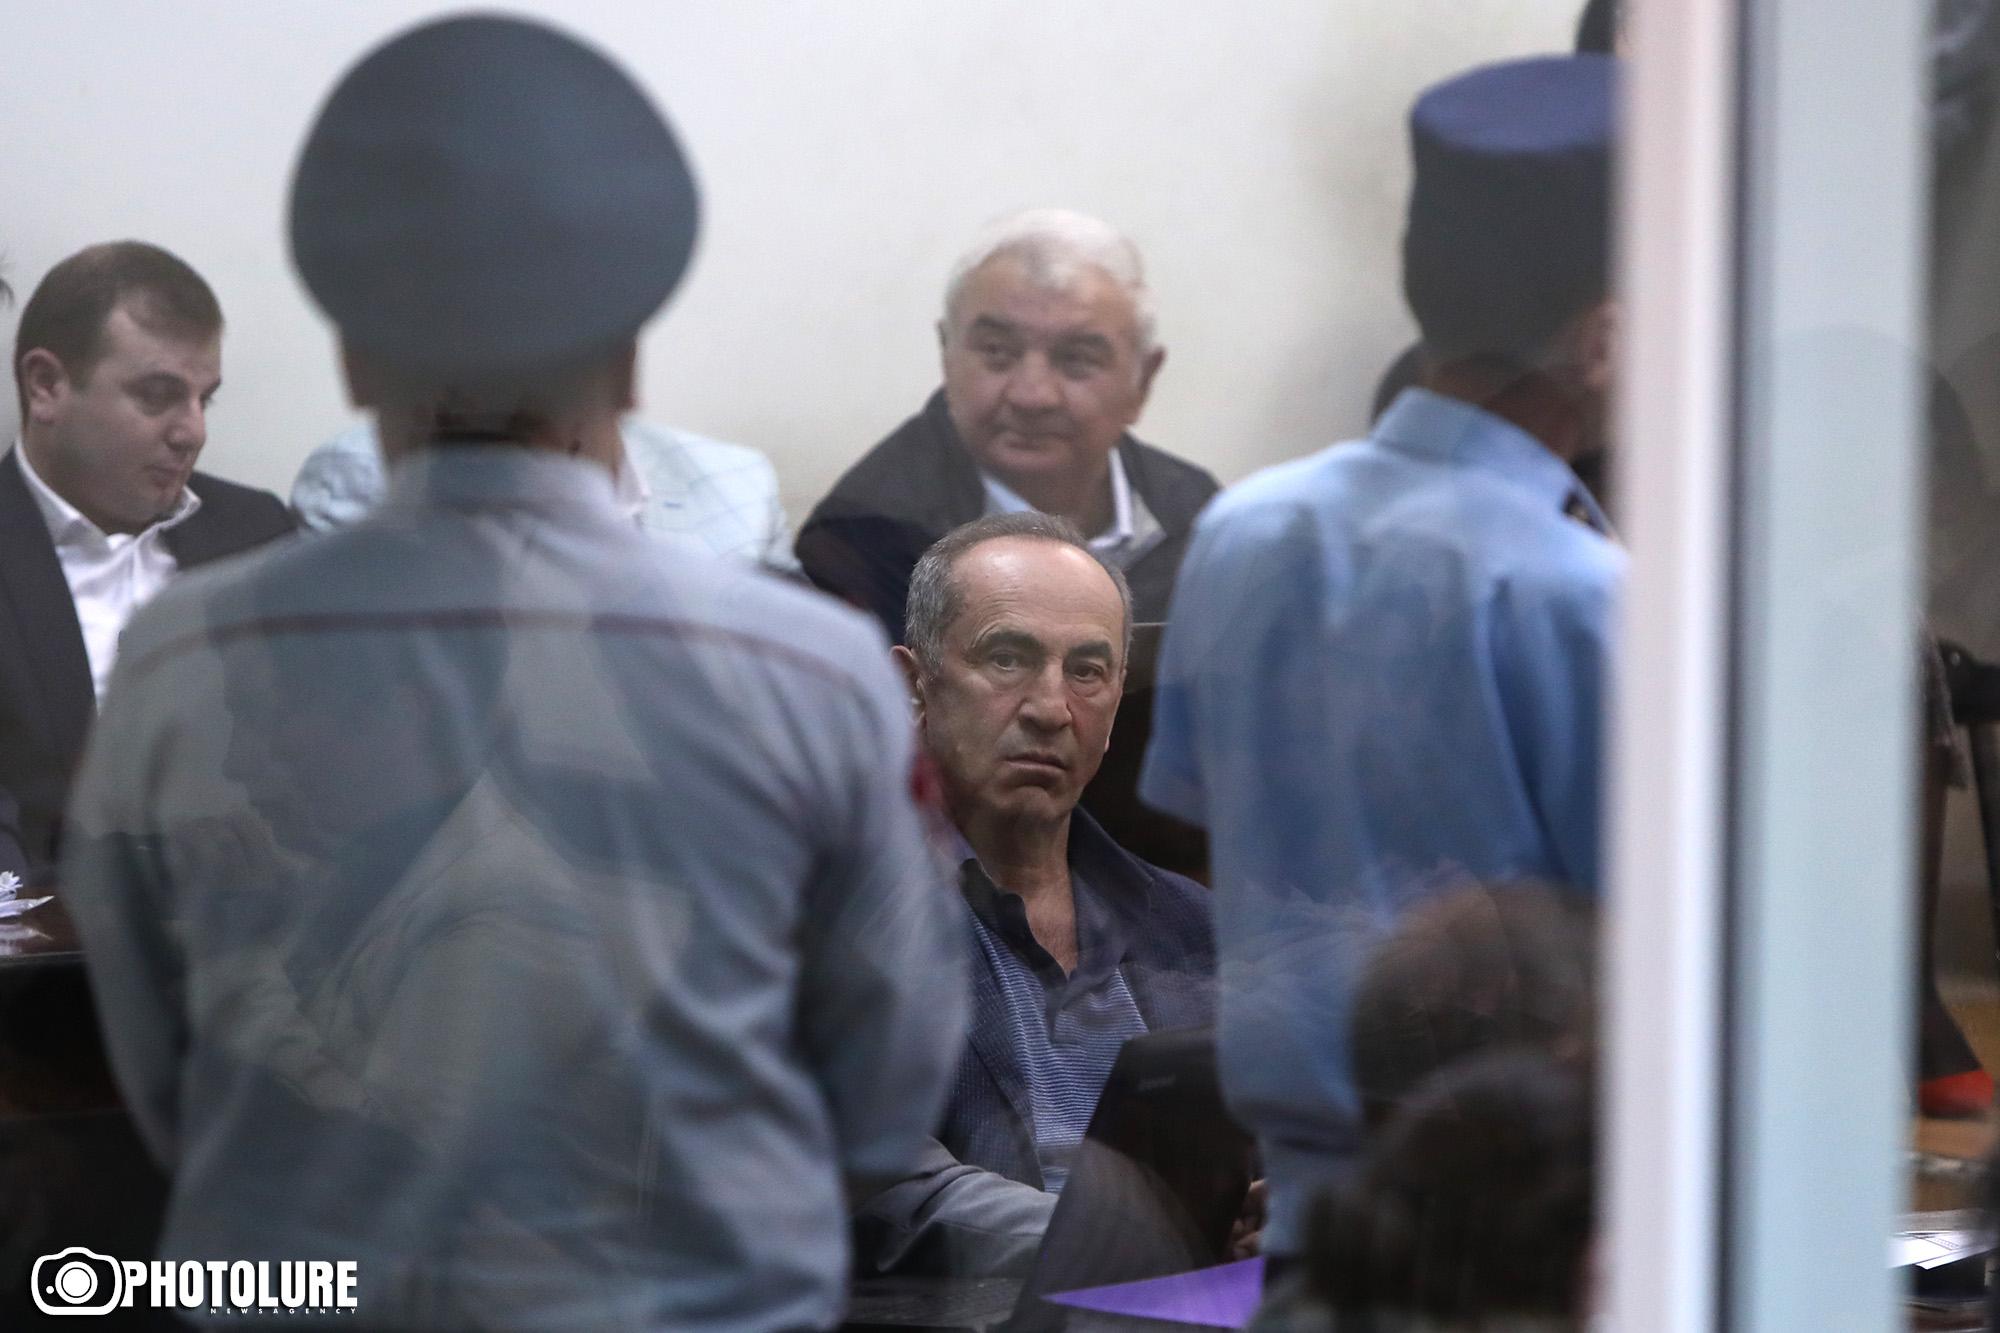 Քոչարյանի և մյուսների գործով նիստը հետաձգվեց Խաչատուրովի պաշտպանի բացակայության պատճառով